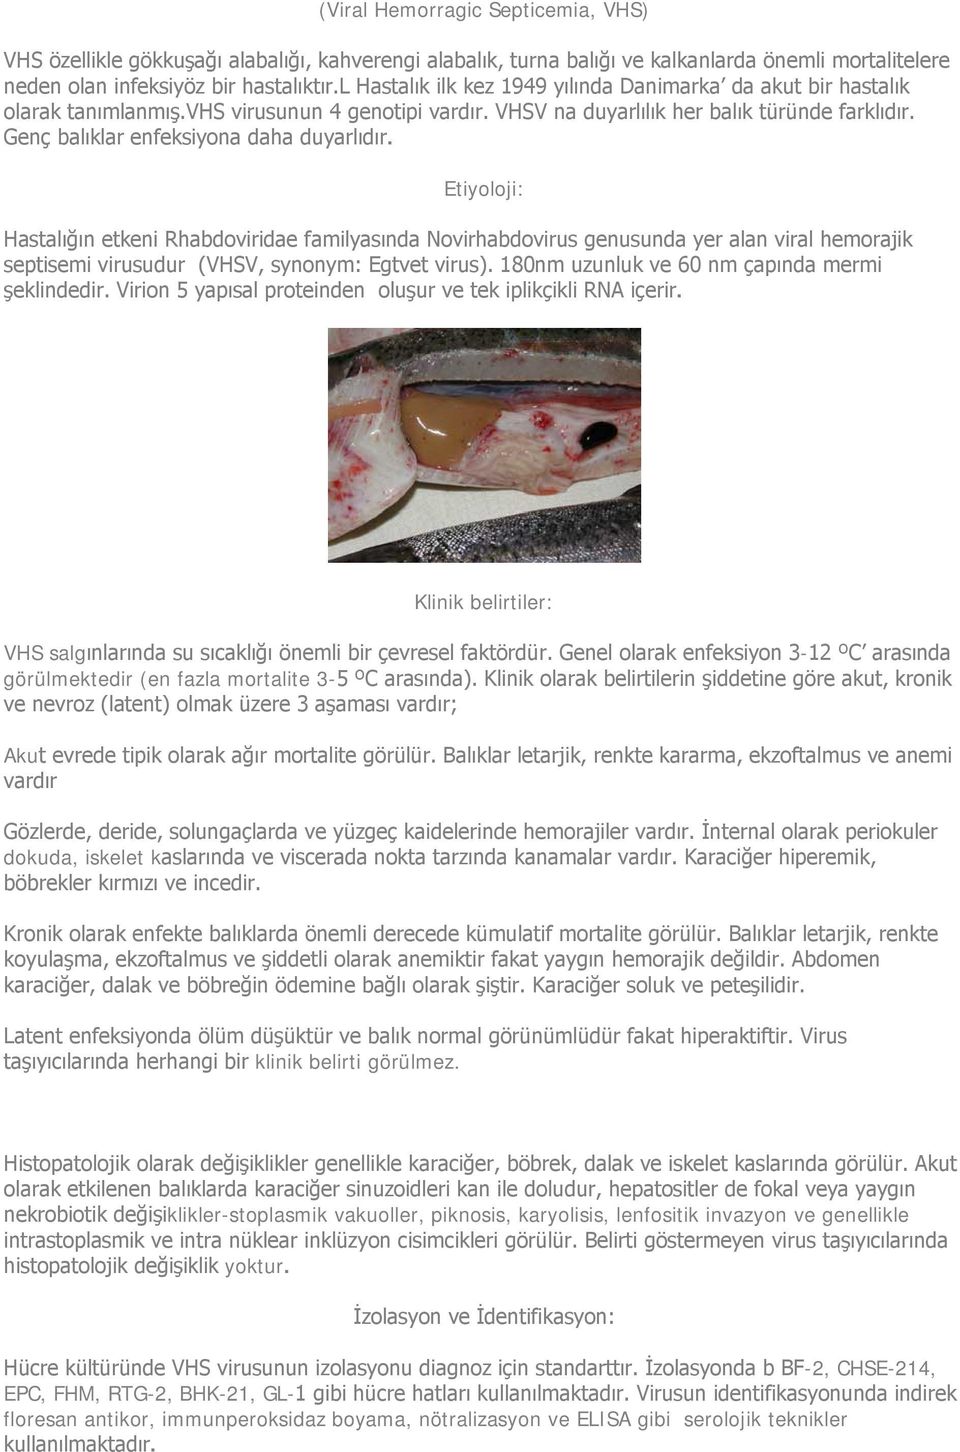 Genç balıklar enfeksiyona daha duyarlıdır. Etiyoloji: Hastalığın etkeni Rhabdoviridae familyasında Novirhabdovirus genusunda yer alan viral hemorajik septisemi virusudur (VHSV, synonym: Egtvet virus).